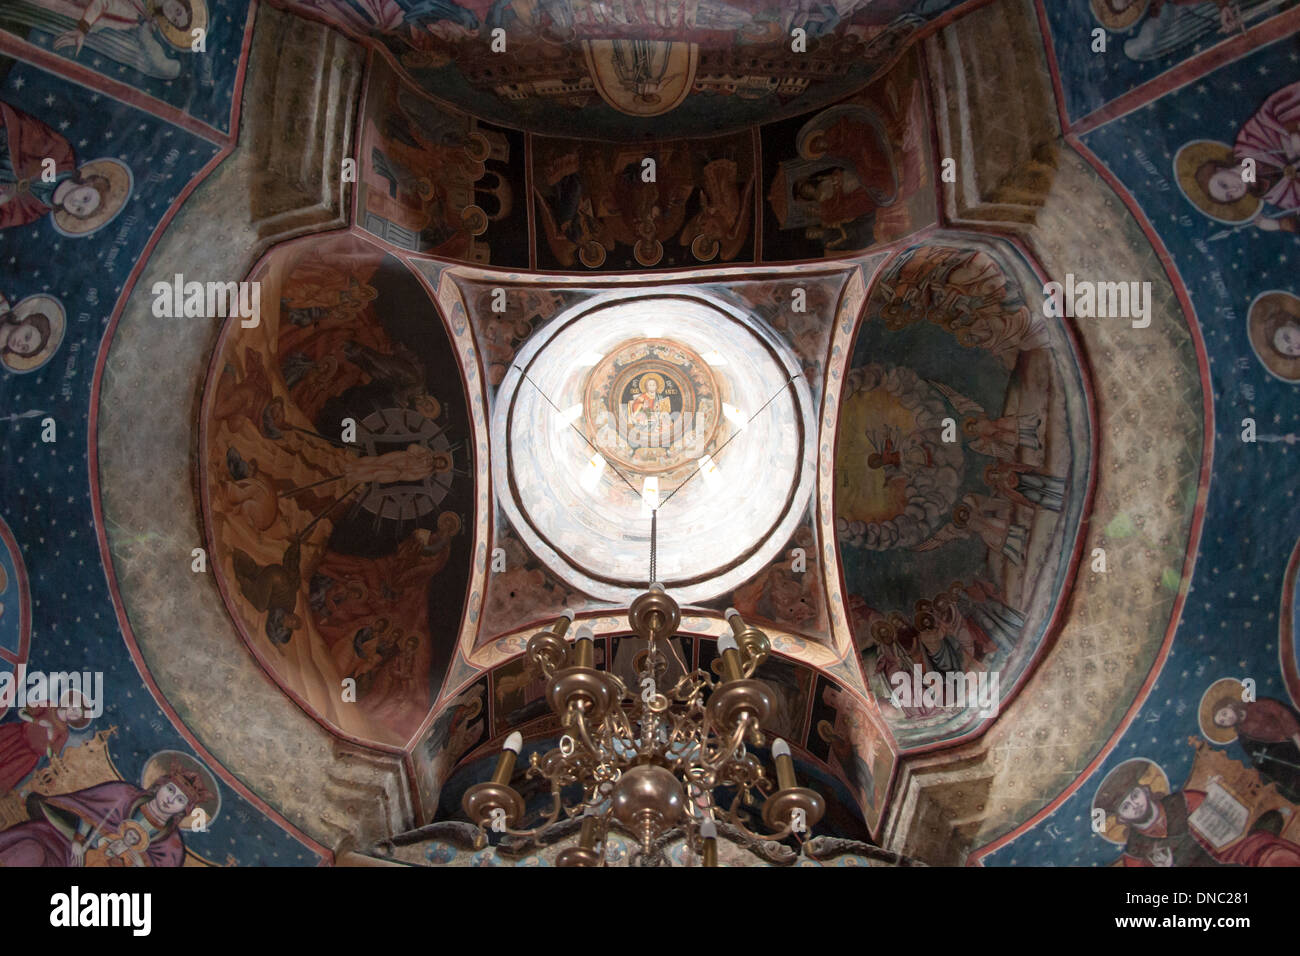 Vista interior del techo y la cúpula de la antigua iglesia (Biserica Veche) en el monasterio de Sinaia, en el condado de Prahova, Rumania. Foto de stock